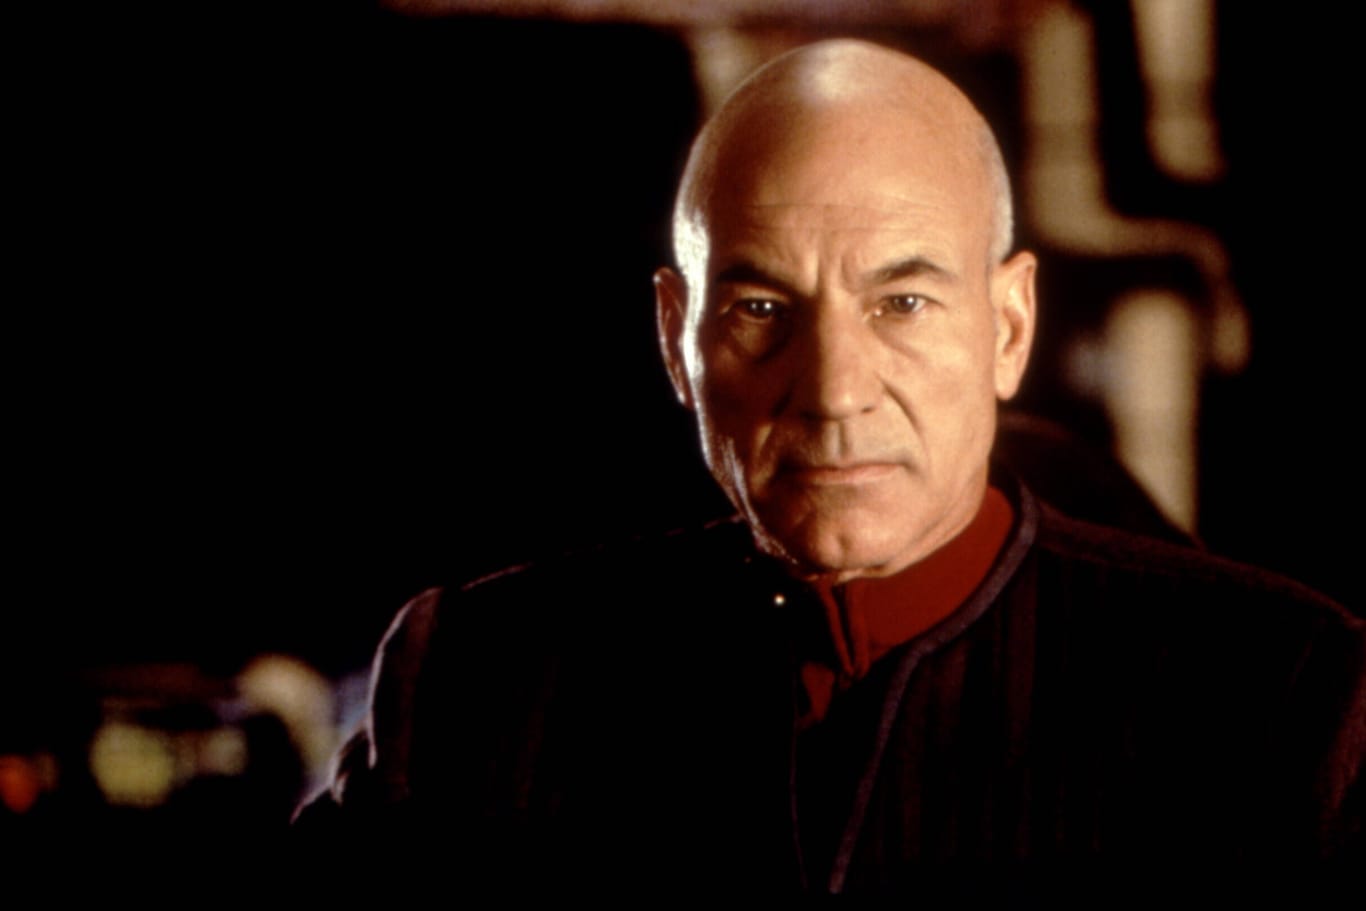 Patrick Stewart 1996 als Captain Picard im Kinofilm "Star Trek: First Contact": Seit Freitag ist die letzte Folge mit dem berühmten Kommandanten der Enterprise online.